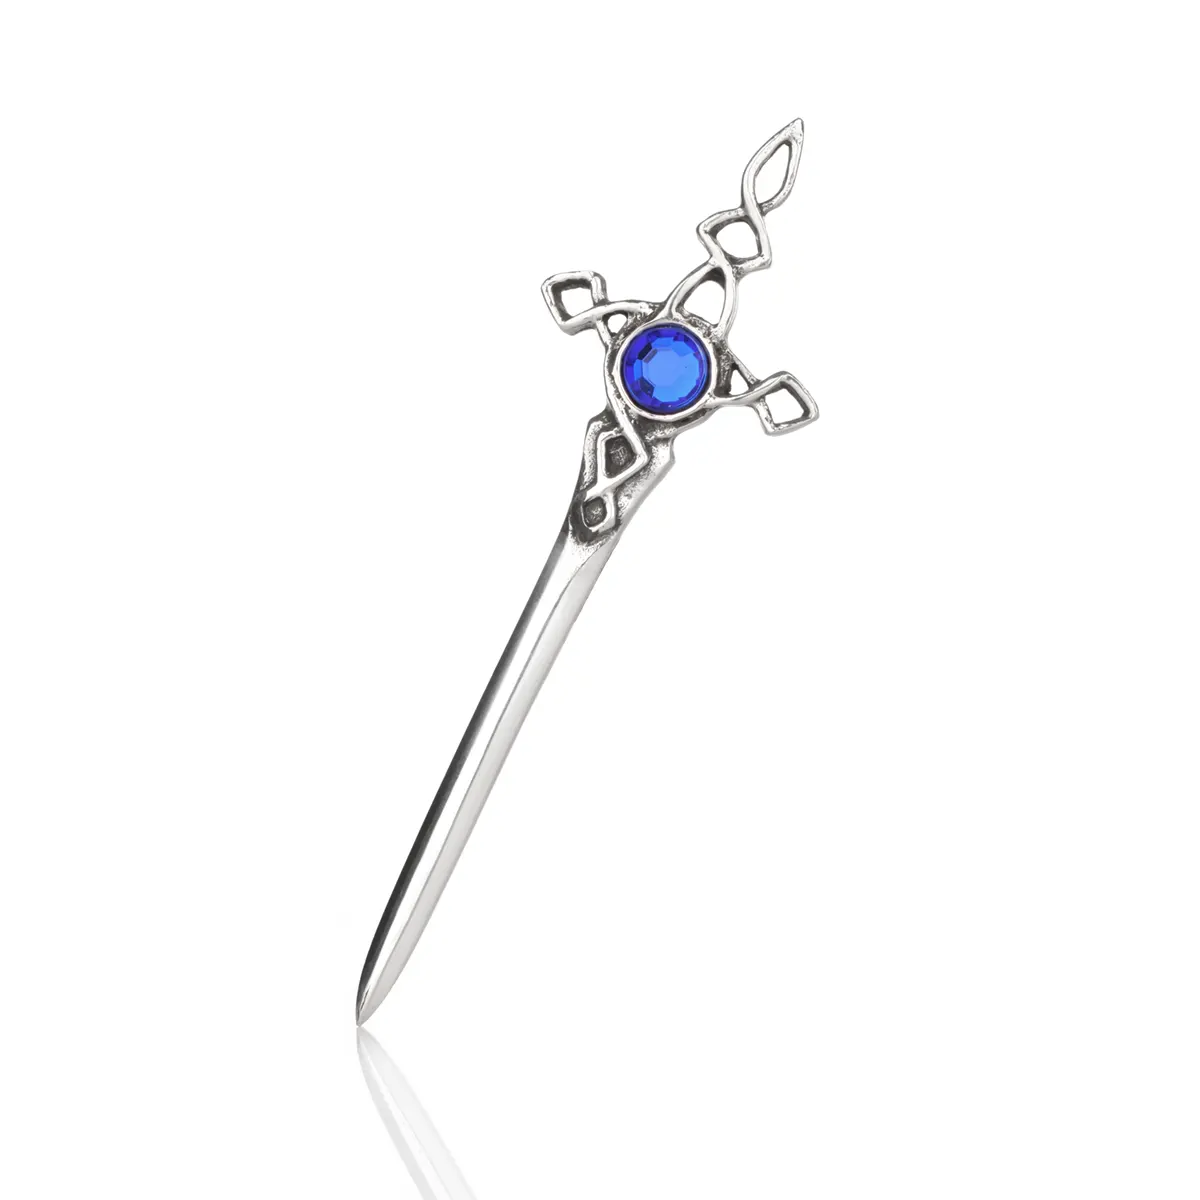 Blue Crystal Sword - Handgefertigter, schottischer Kilt Pin mit blauem Kristall